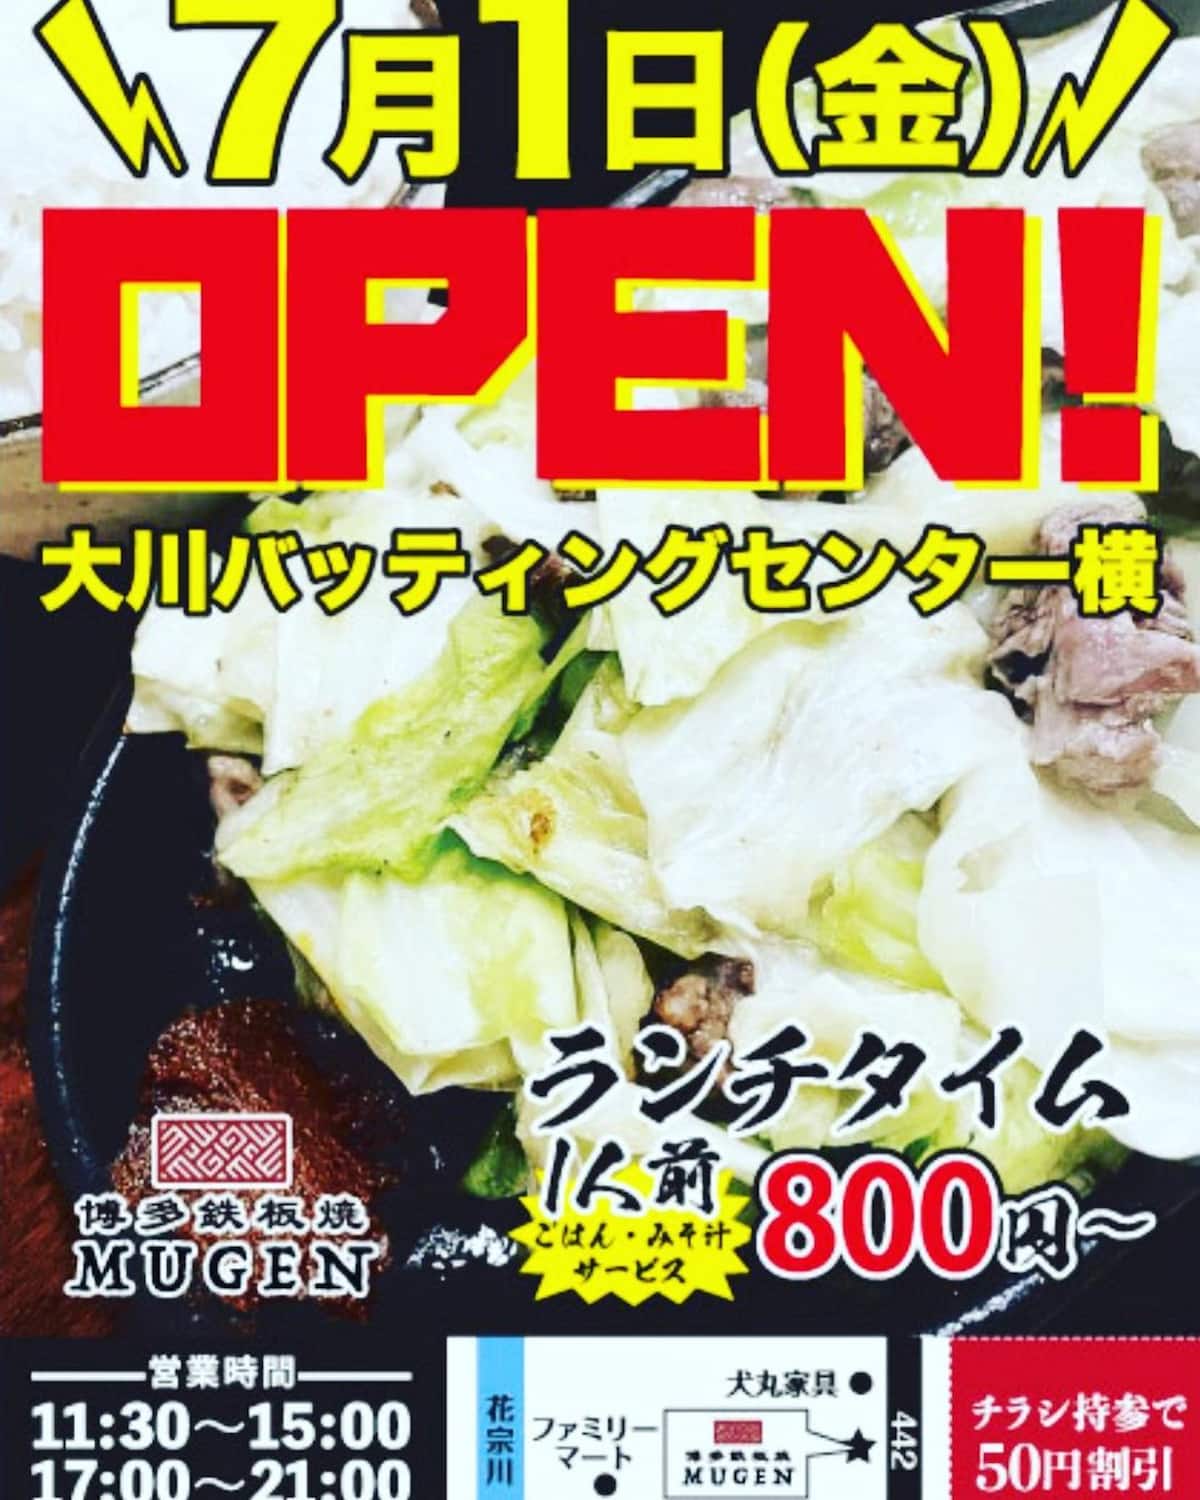 博多鉄板焼MUGENって「肉とキャベツと辛みその絶品鉄板焼肉」のお店が7月1日にオープンしてるみたい。大川市